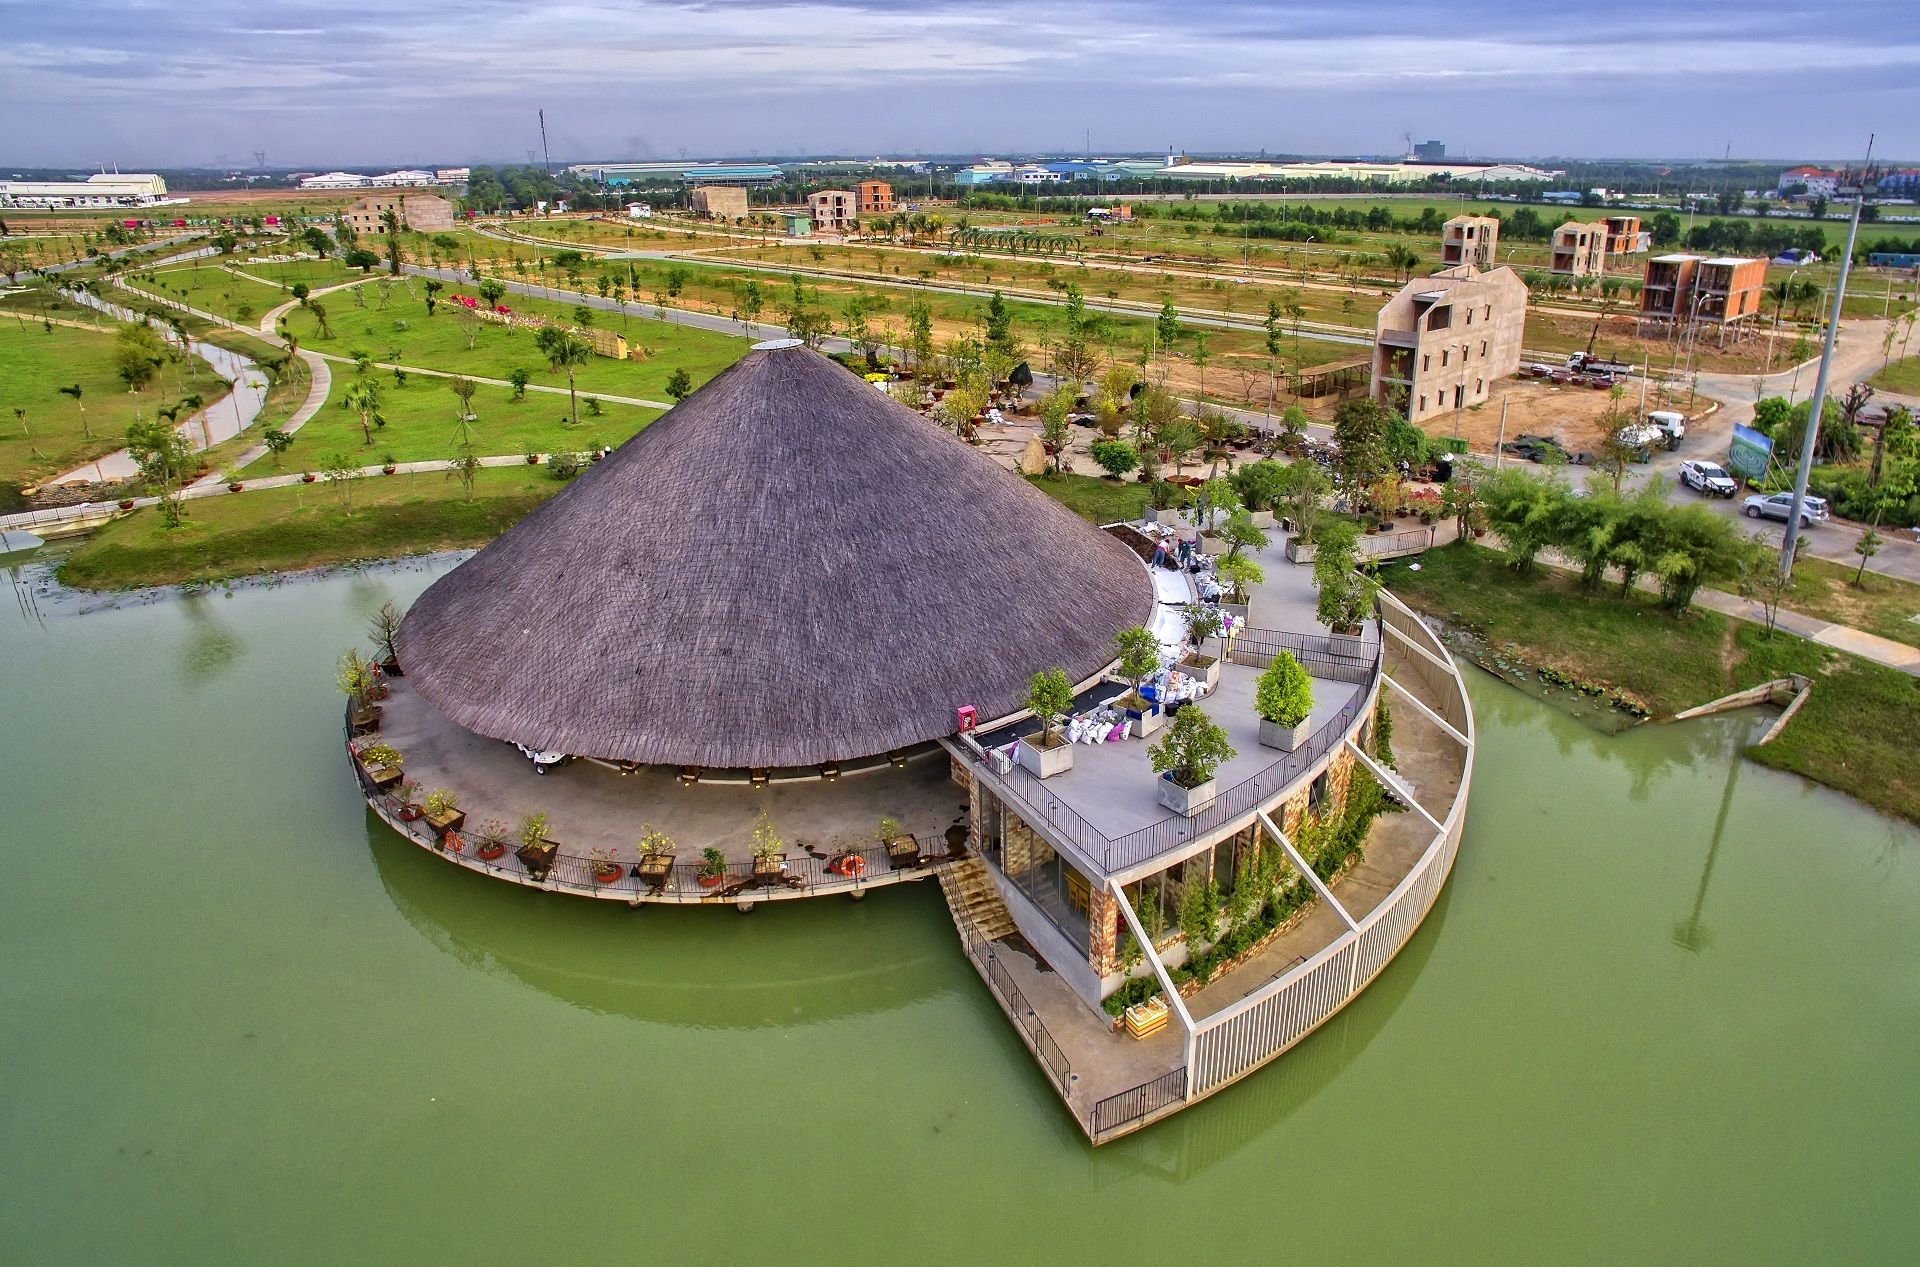 Trung tâm hội nghị Tre Việt tọa lạc trên mặt hồ Tịnh Đế Liên Làng Sen 